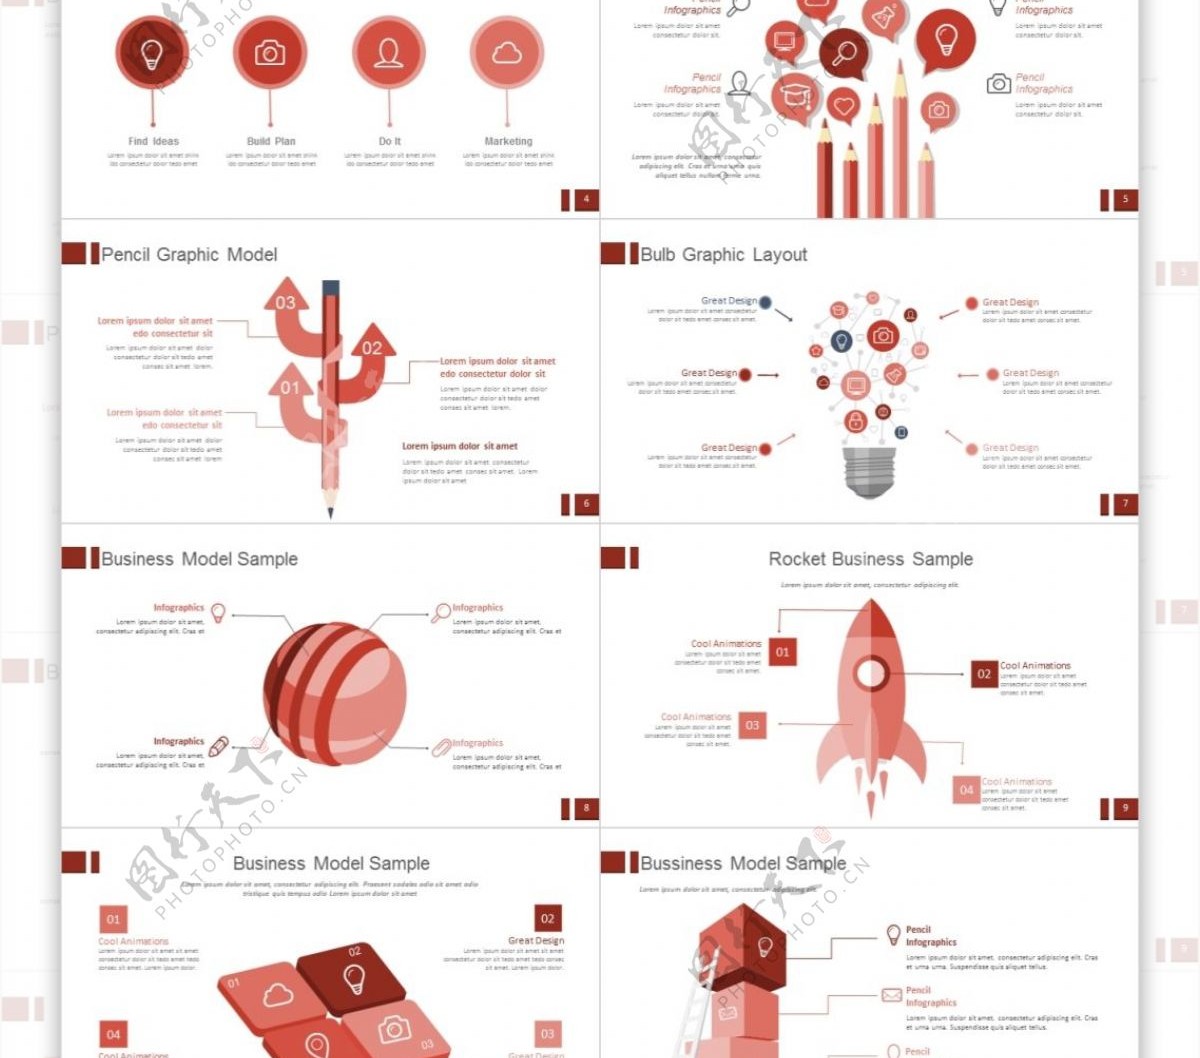 红色清新风企业宣传设计行业keynote模板